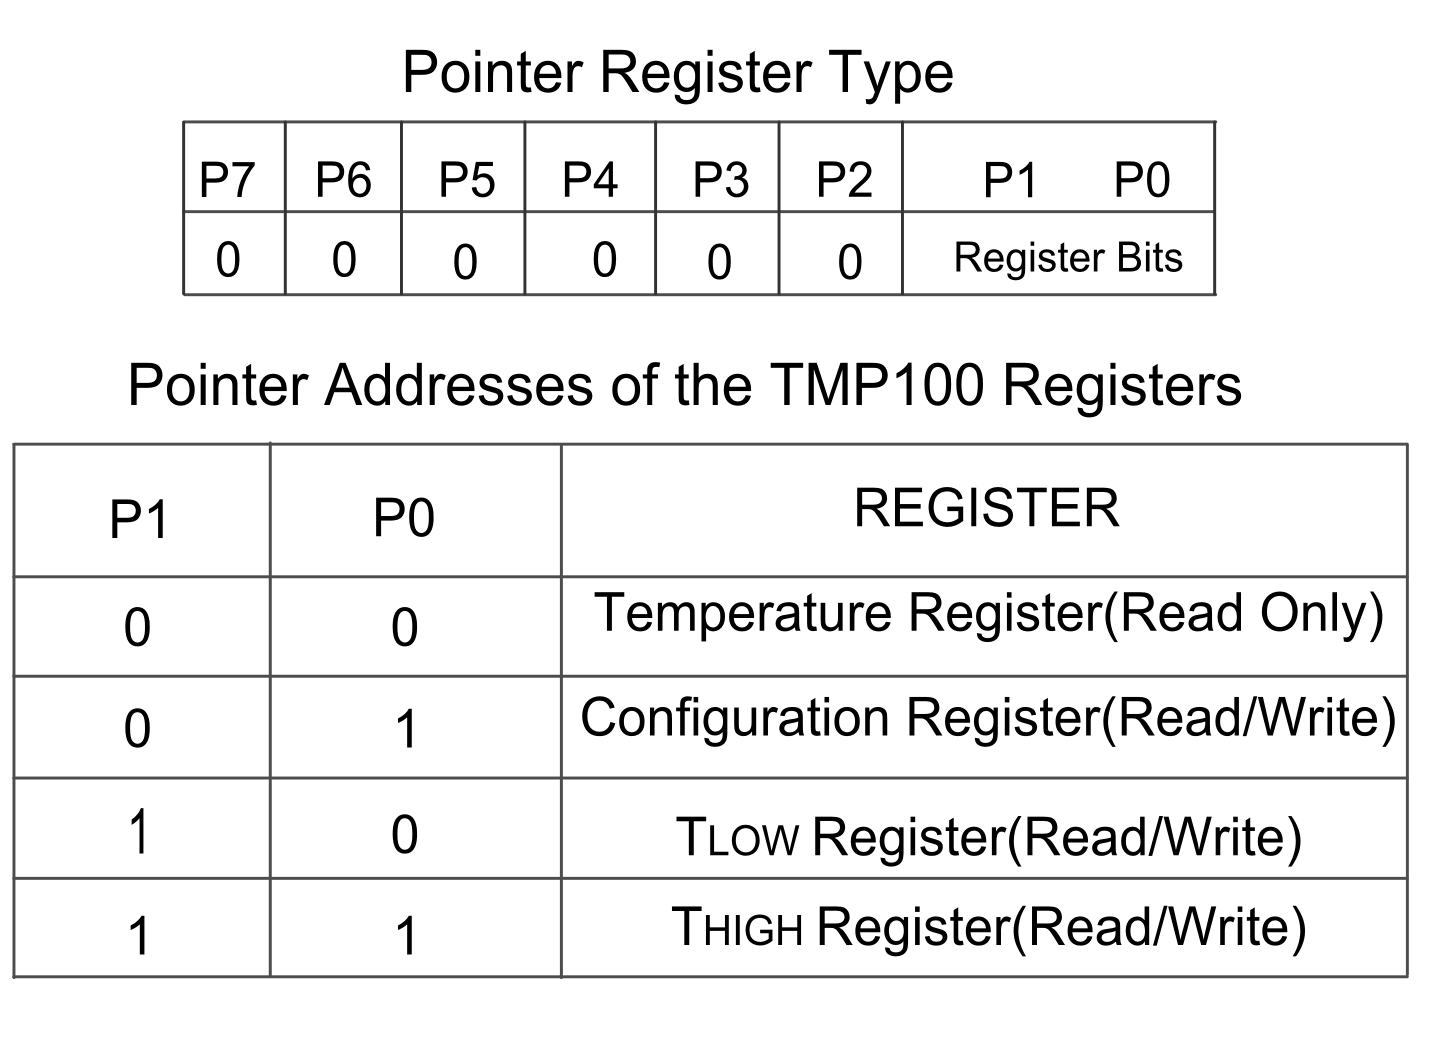 Pointer Register Type